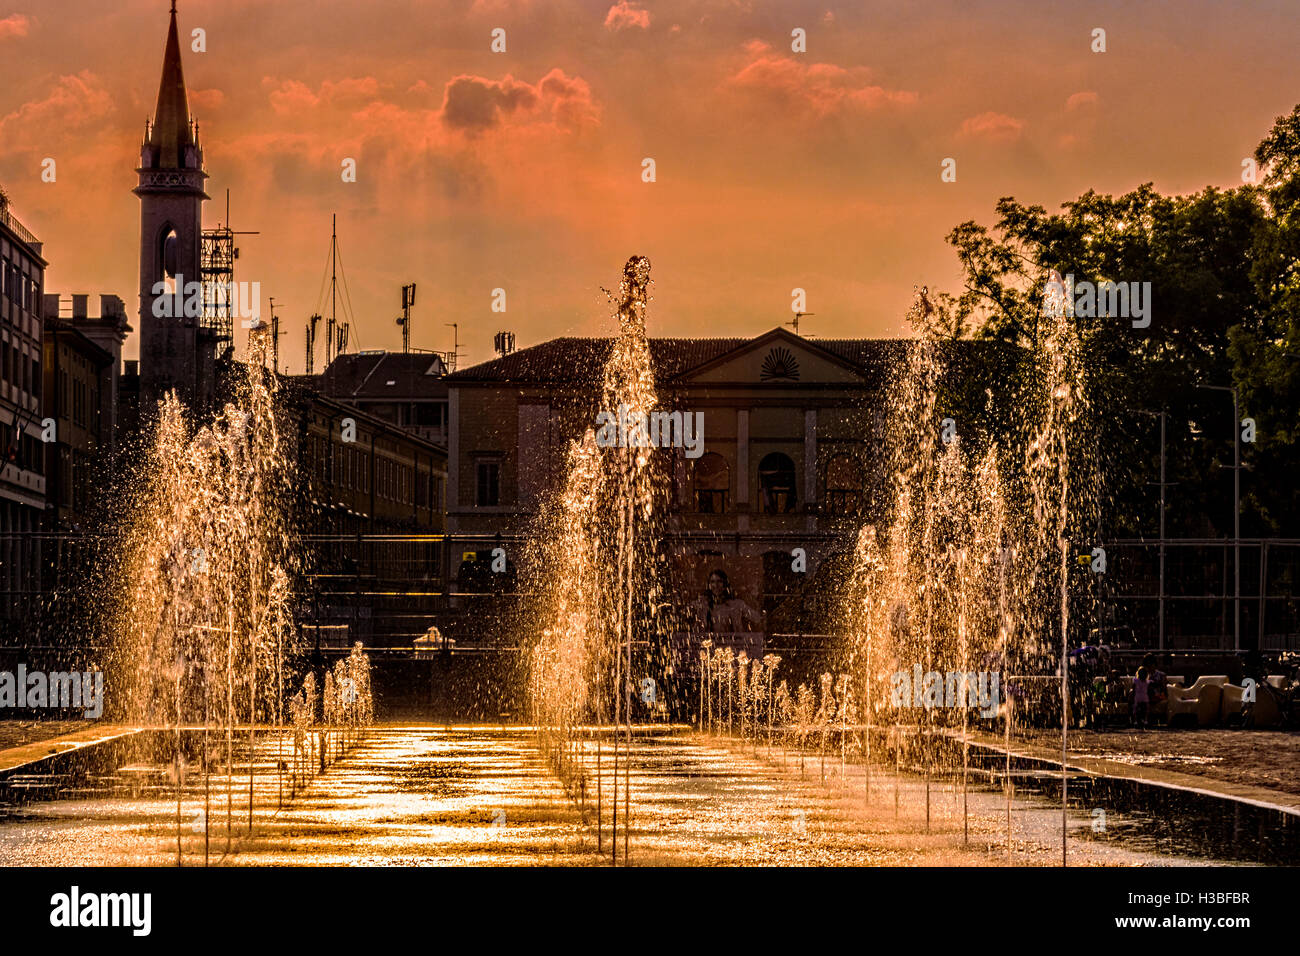 Italien-Emilia-Romagna-Reggio Emilia Piazza dei Teatri - Piazza della Vittoria - Brunnen Stockfoto